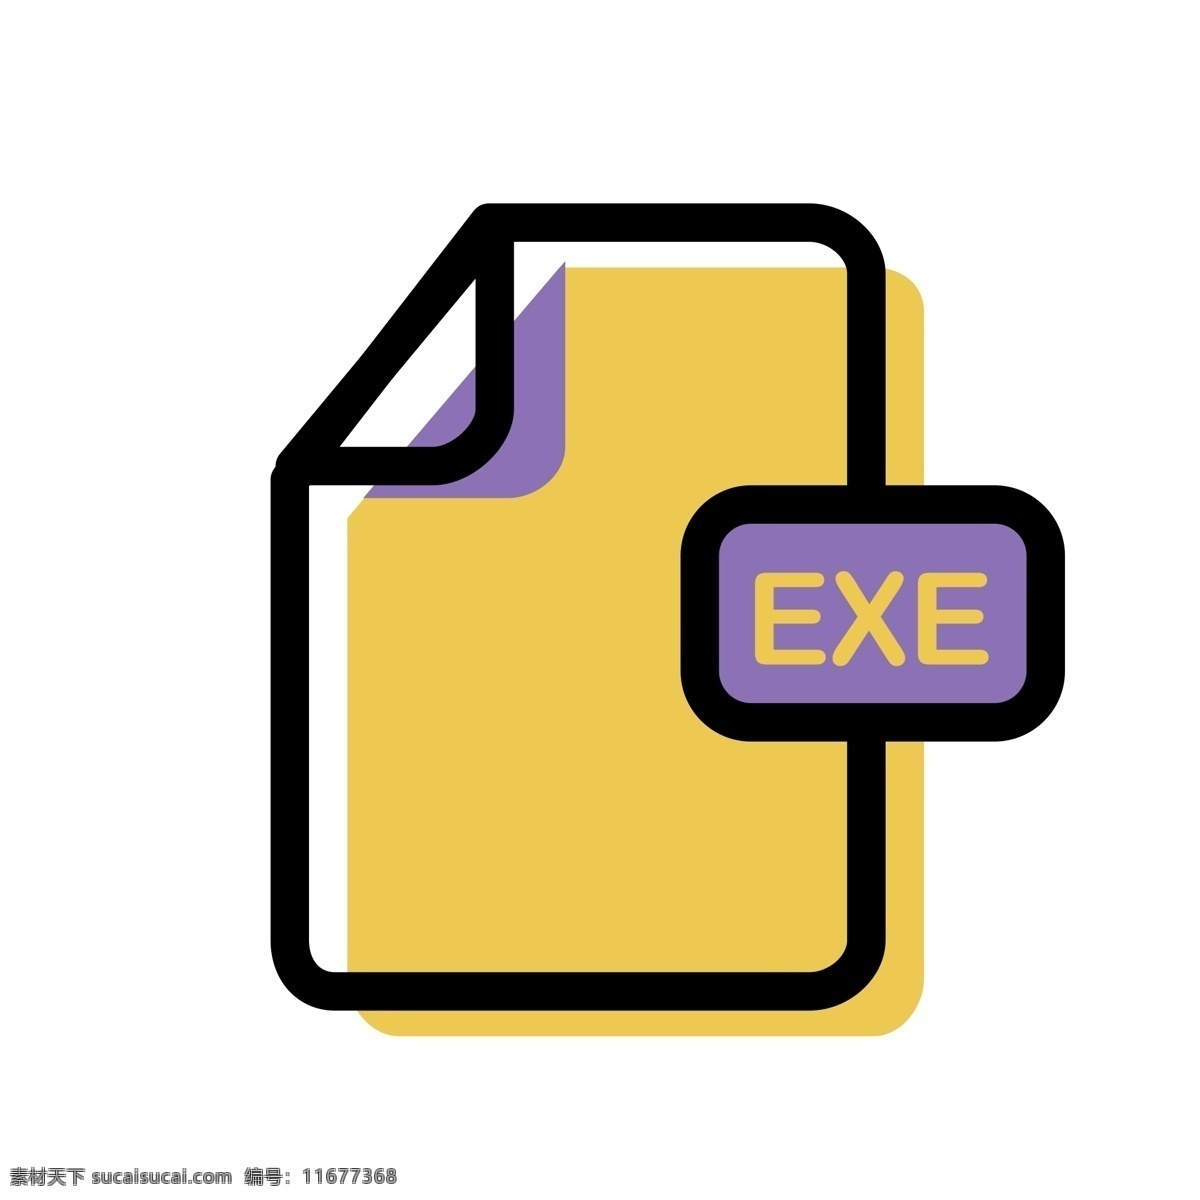 exe 文件 图标 免 抠 图 格式 文件图标 ui应用图标 卡通图案 卡通插画 电脑图标 文件夹图标 免抠图